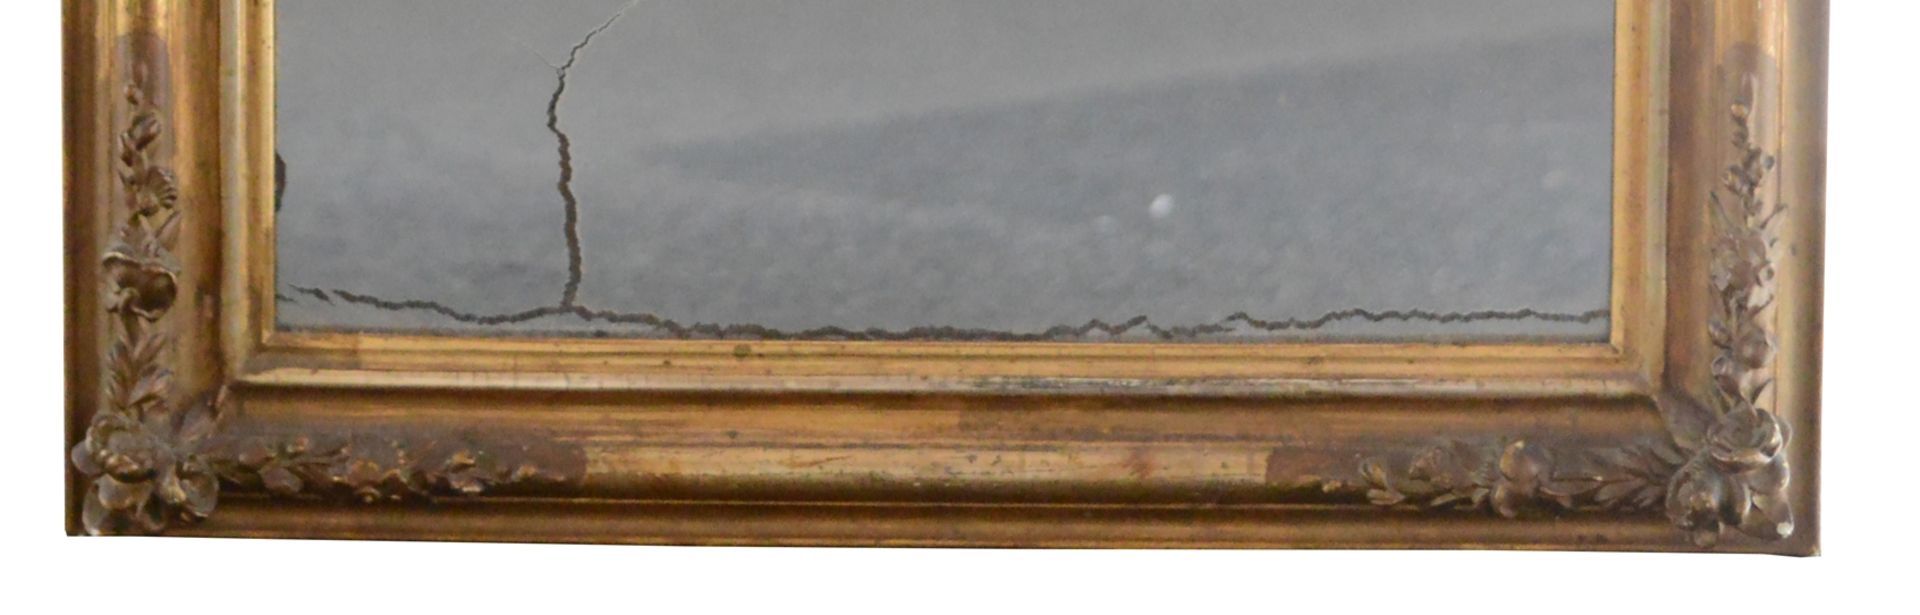 Goldspiegel um 1860, Louis Philippe, Rahmen vergoldet mit kleinen Stuckröschen, altes Spiegelglas, - Bild 4 aus 5